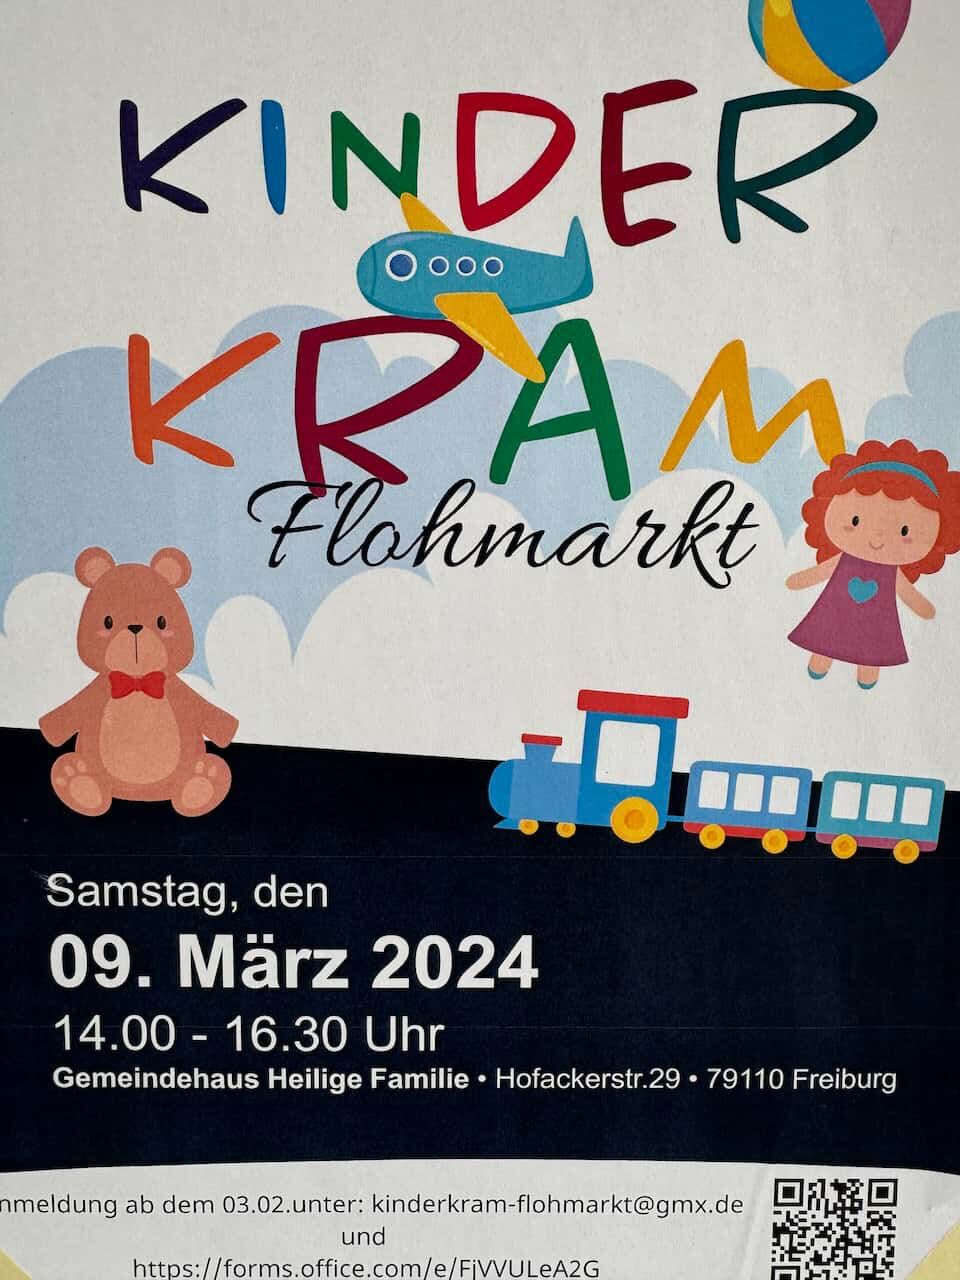 Kinderkram Flohmarkt 2024 im Gemeidehaus Heilige Familie in Freiburg